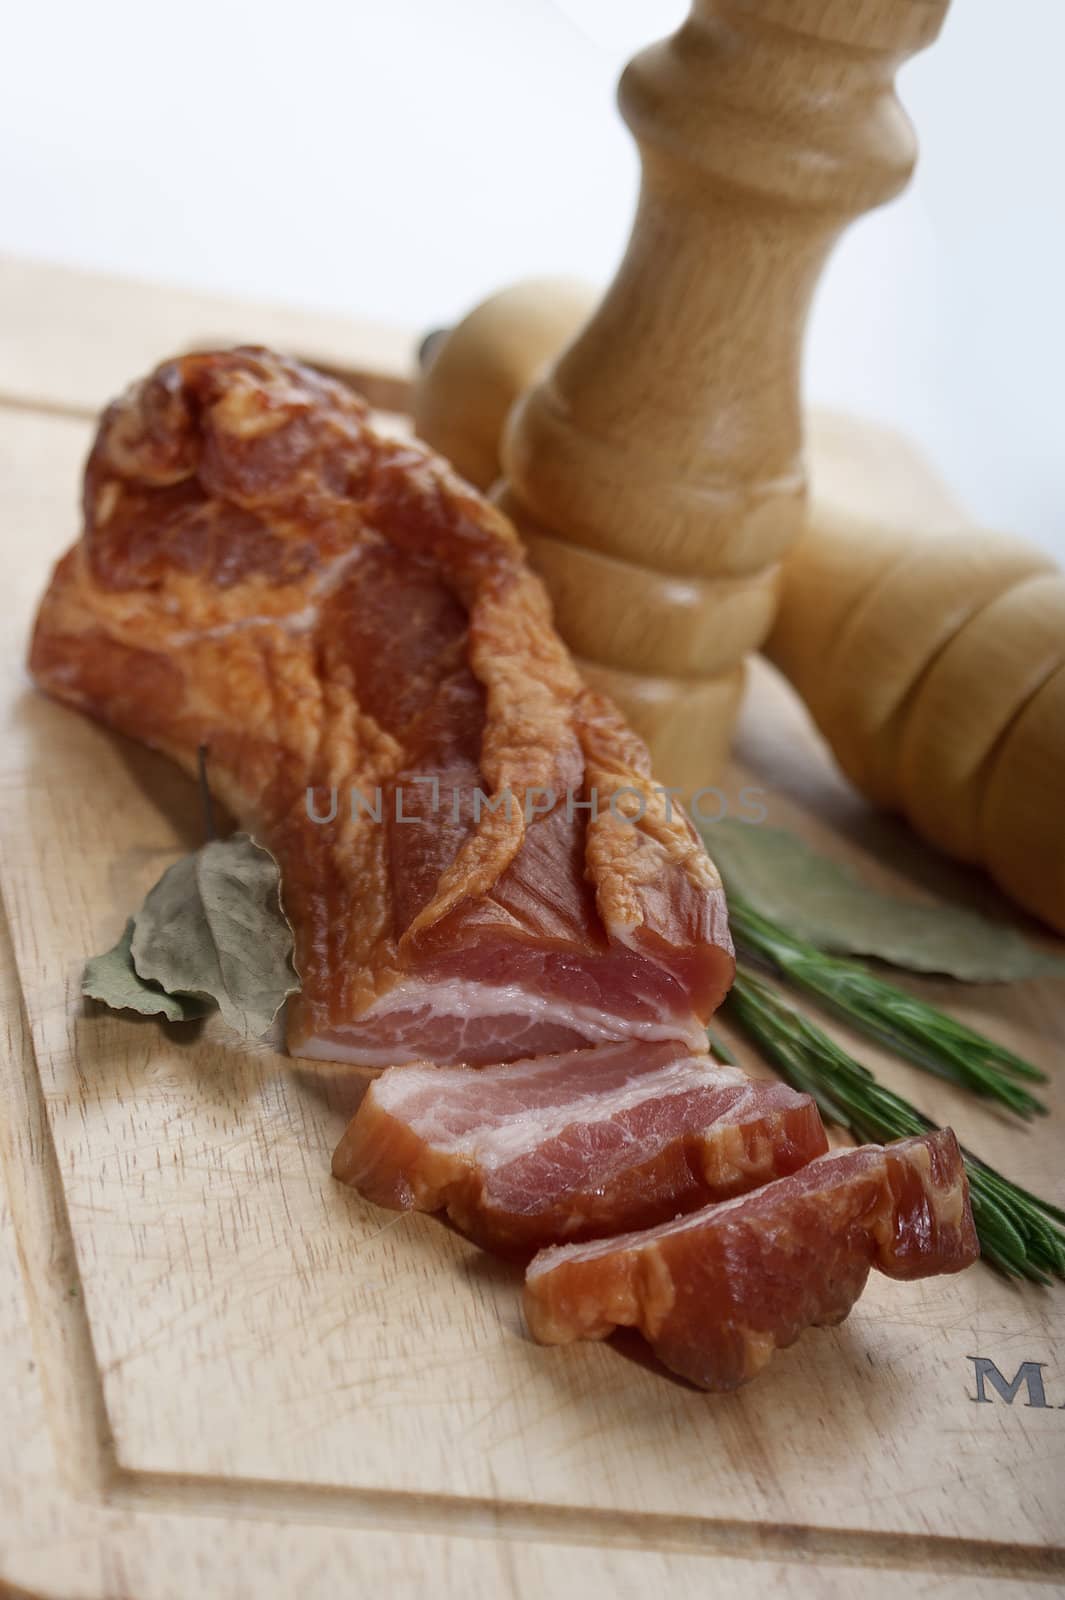 Smoked bacon by Angorius